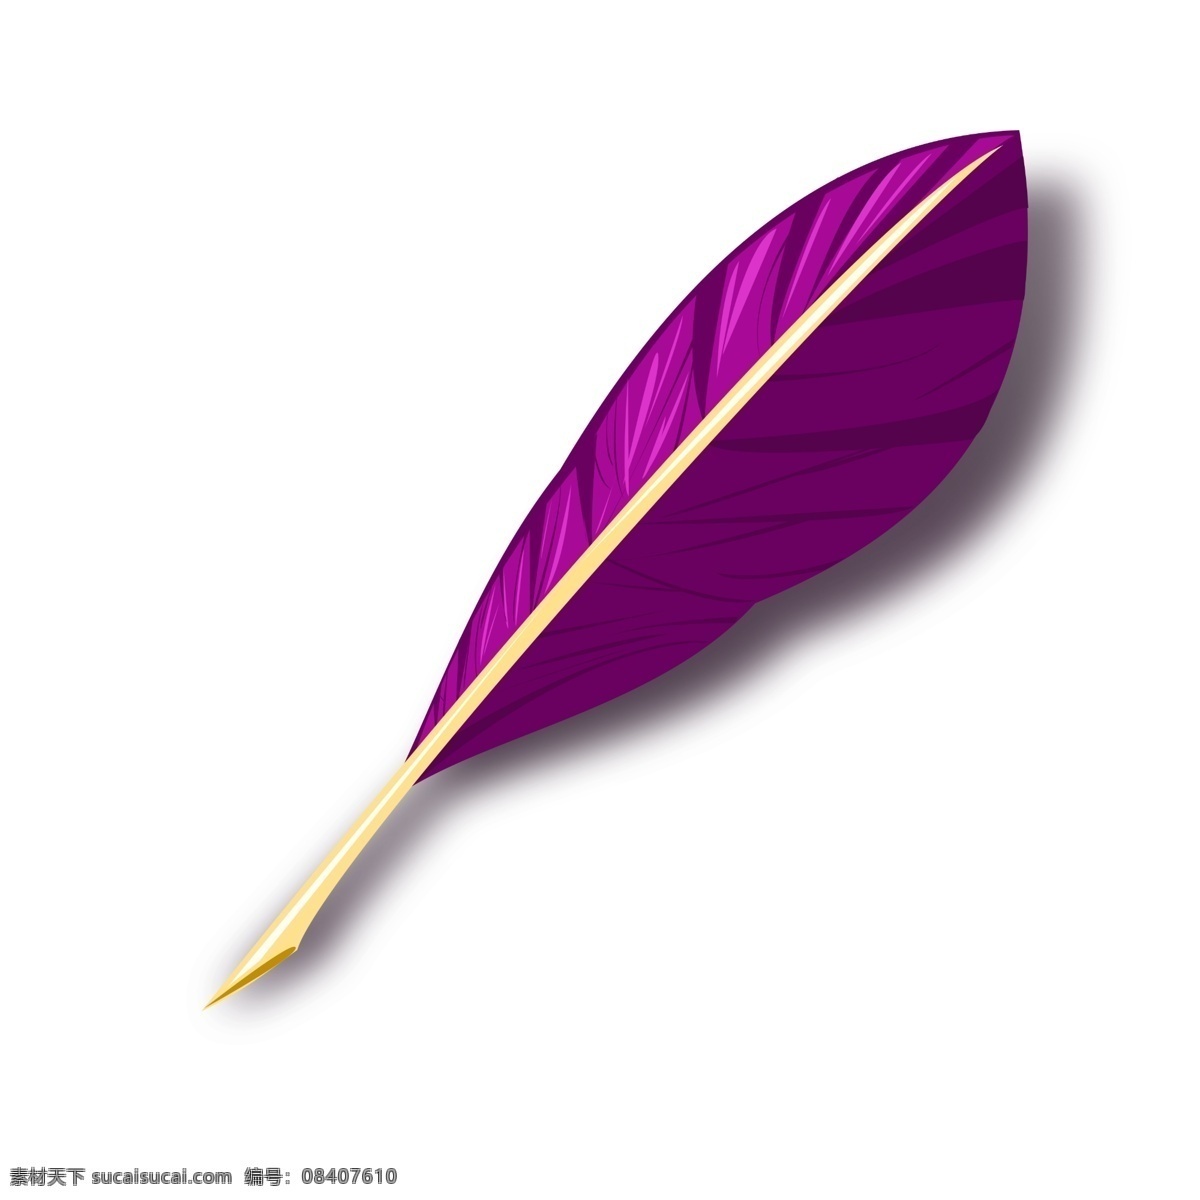 漂亮 羽毛 钢笔 插画 羽毛钢笔 一支笔 创意笔 羽毛钢笔插画 紫色钢笔 创意羽毛钢笔 紫色树叶笔